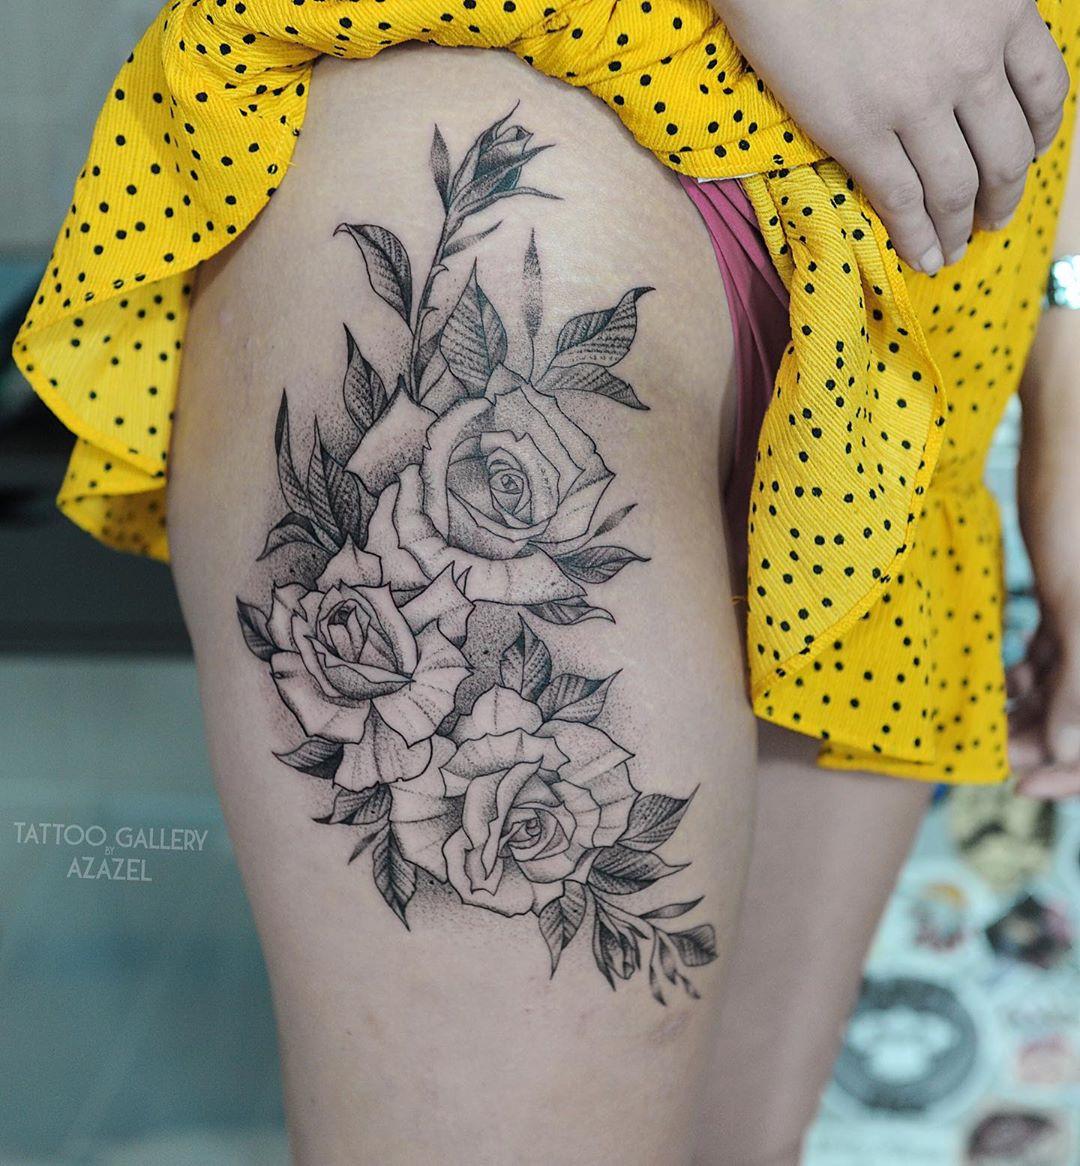 Inksearch tattoo Magdalena Kuchta